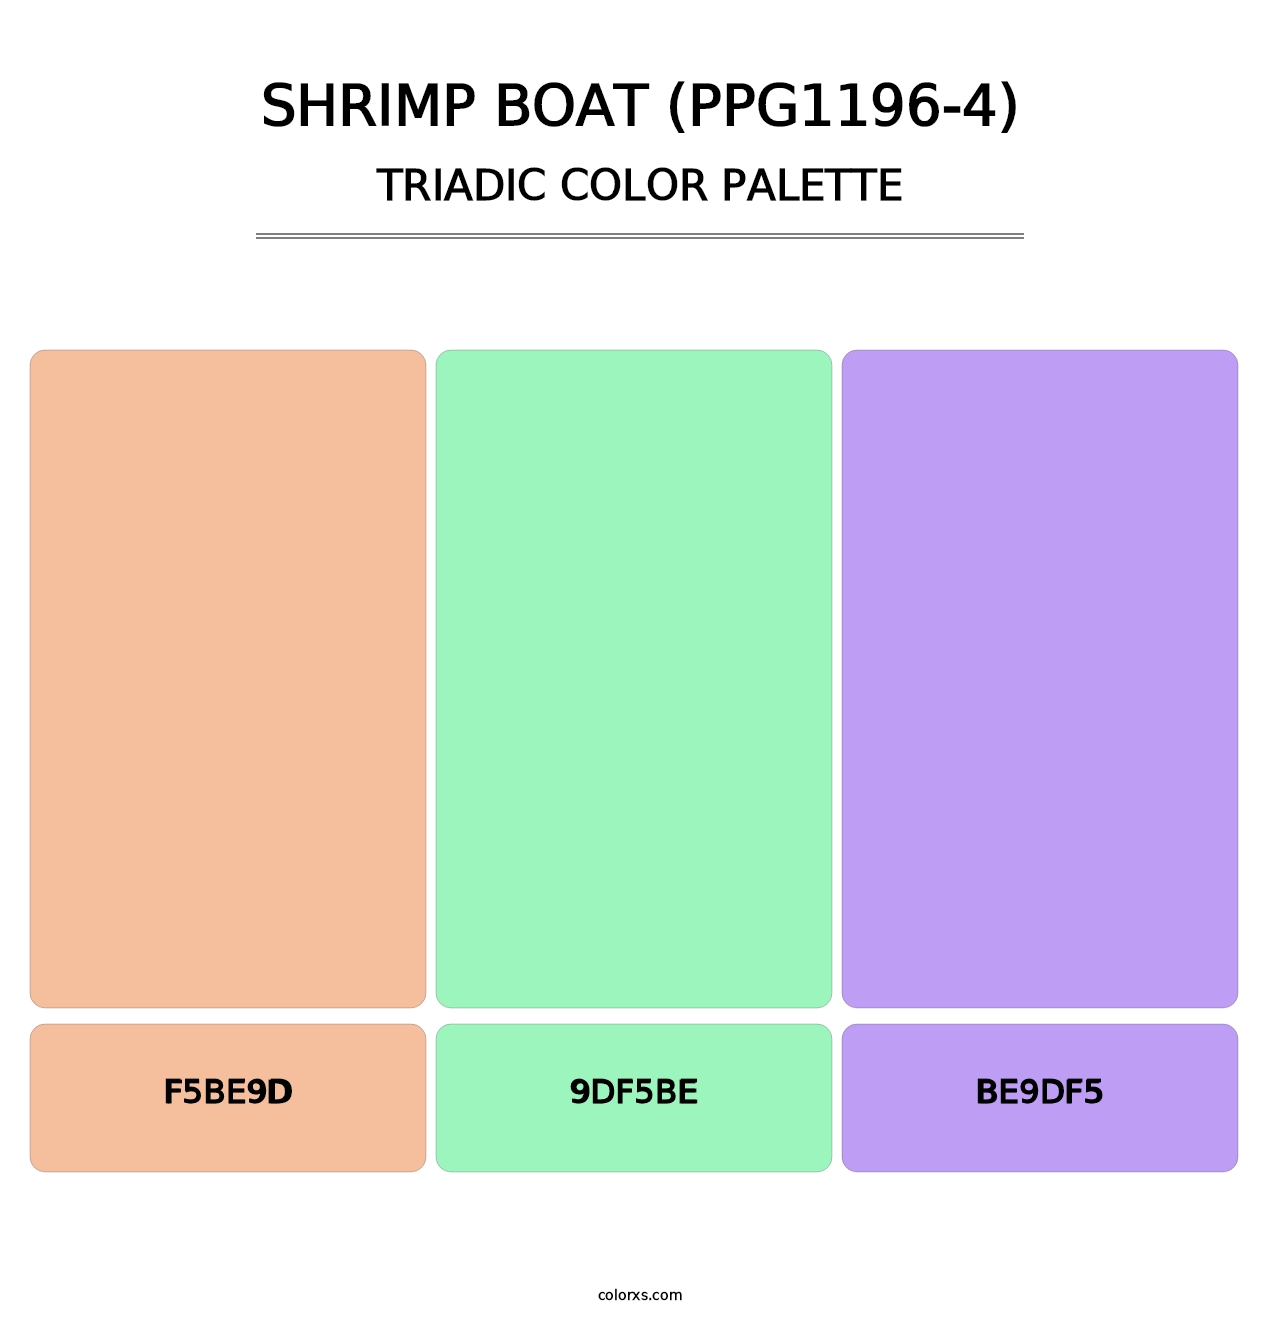 Shrimp Boat (PPG1196-4) - Triadic Color Palette